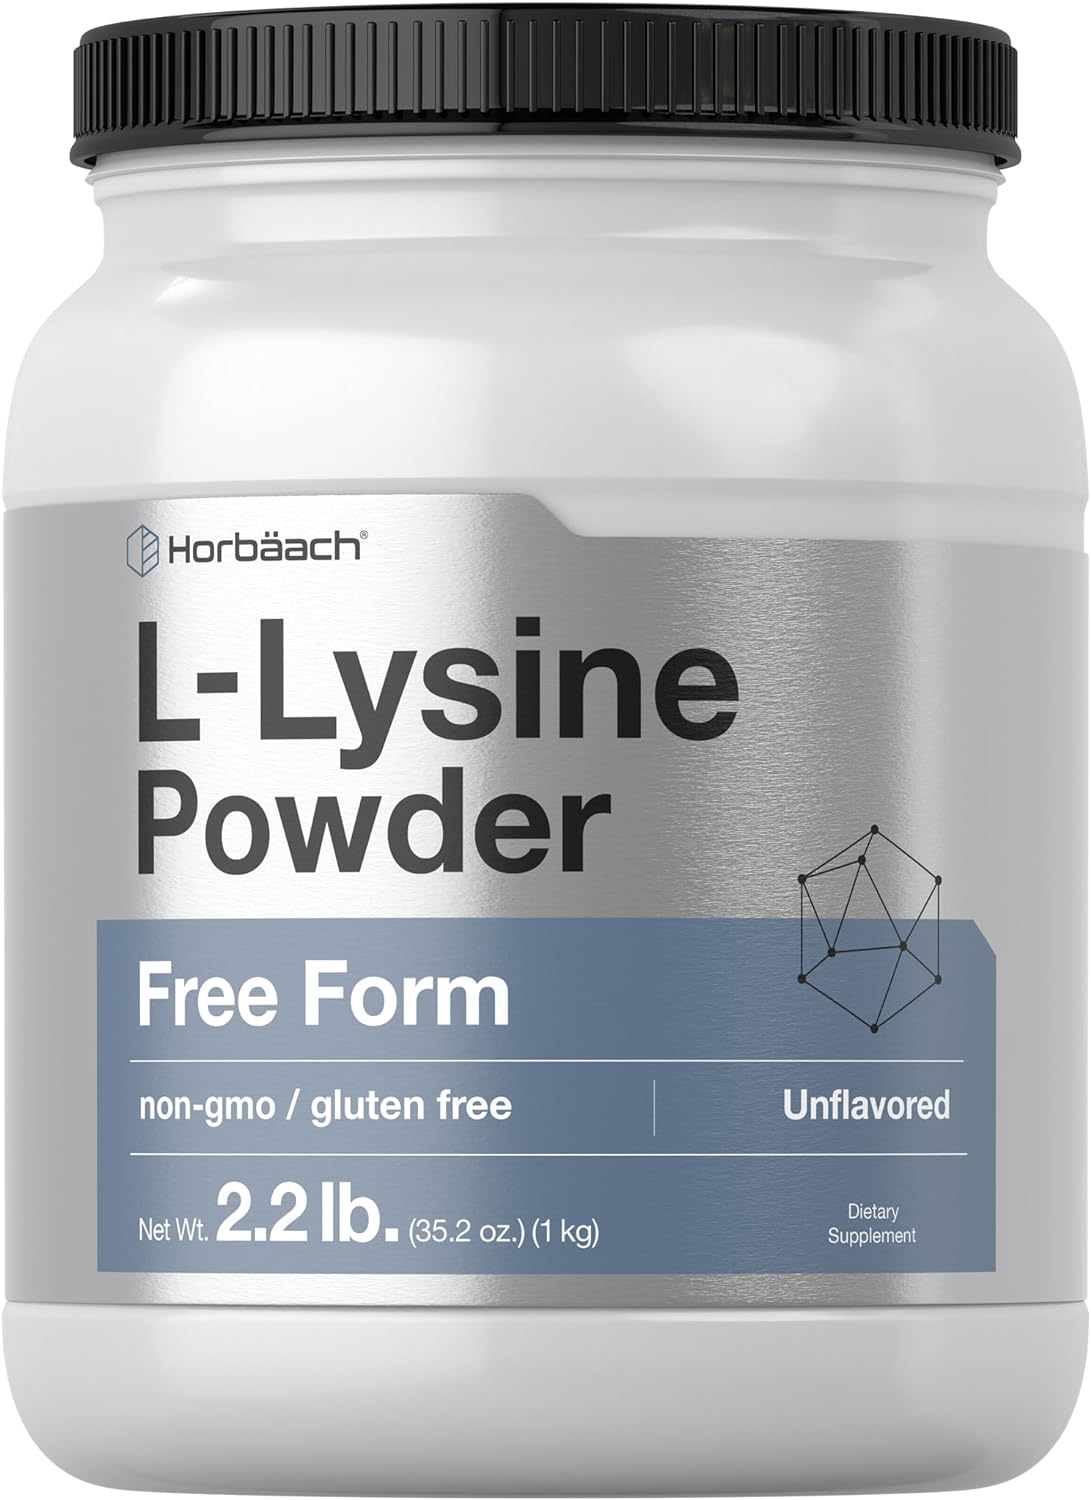 Horbach L-Lysine Powder | 2.2 lbs | Unflavored Free Form Supplement | Vegetarian, Non-GMO, Gluten Free Formula